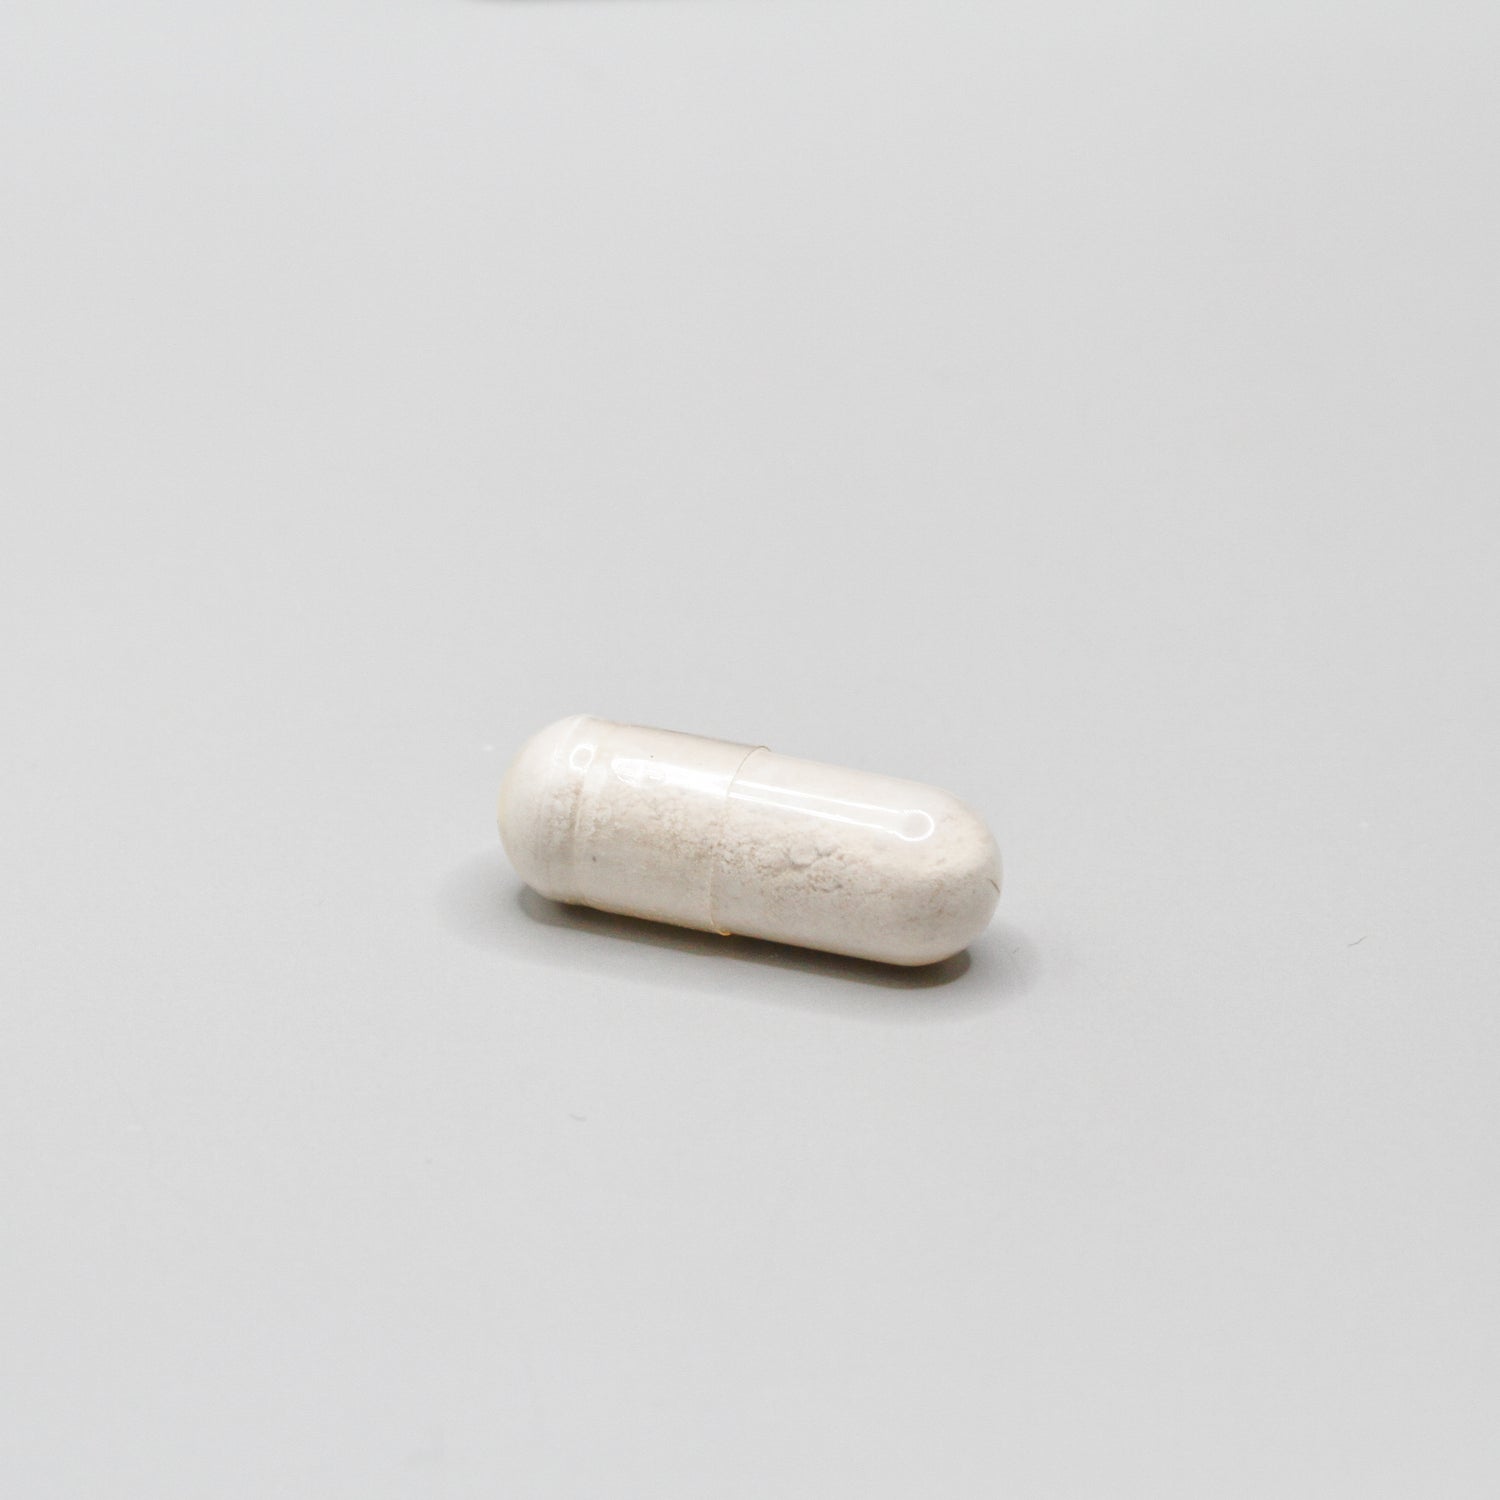 A White pill